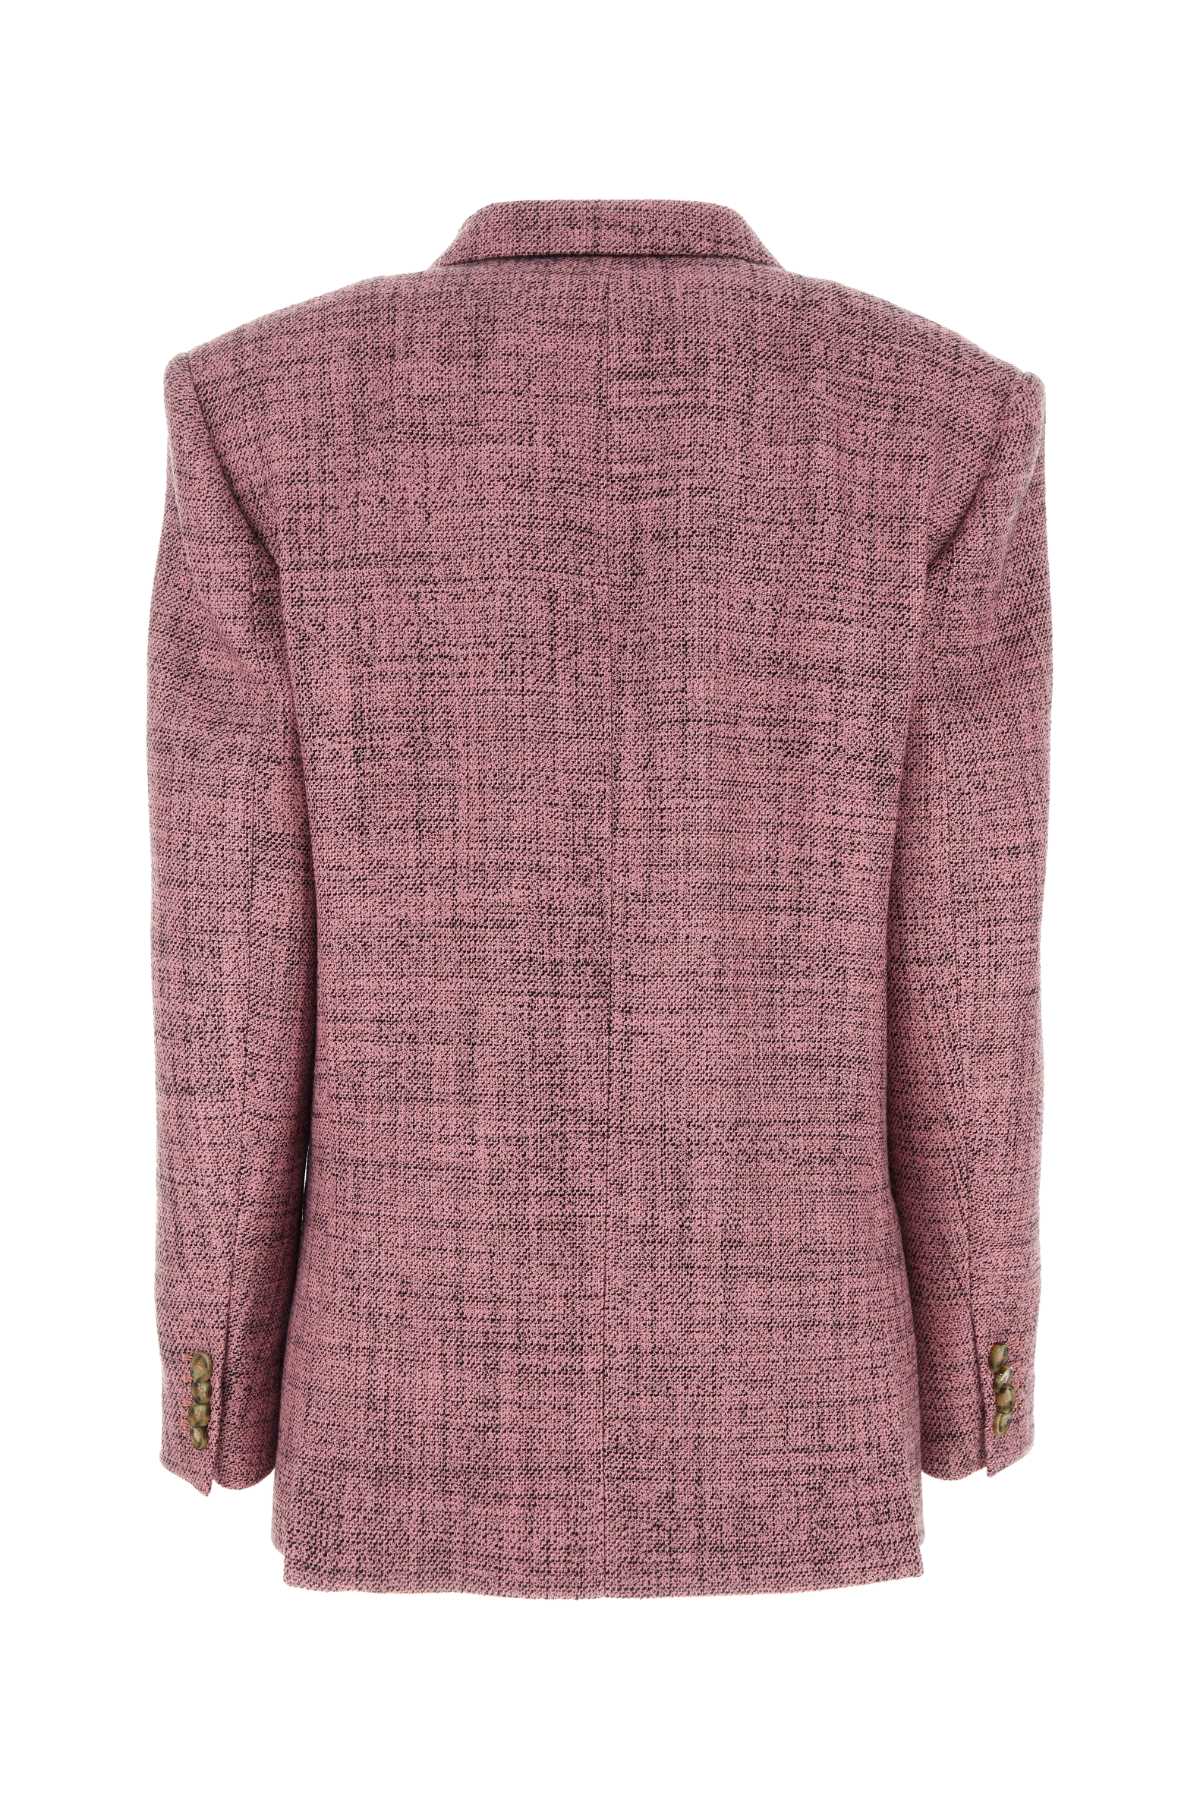 Stella Mccartney Pink Tweed Mouline Blazer